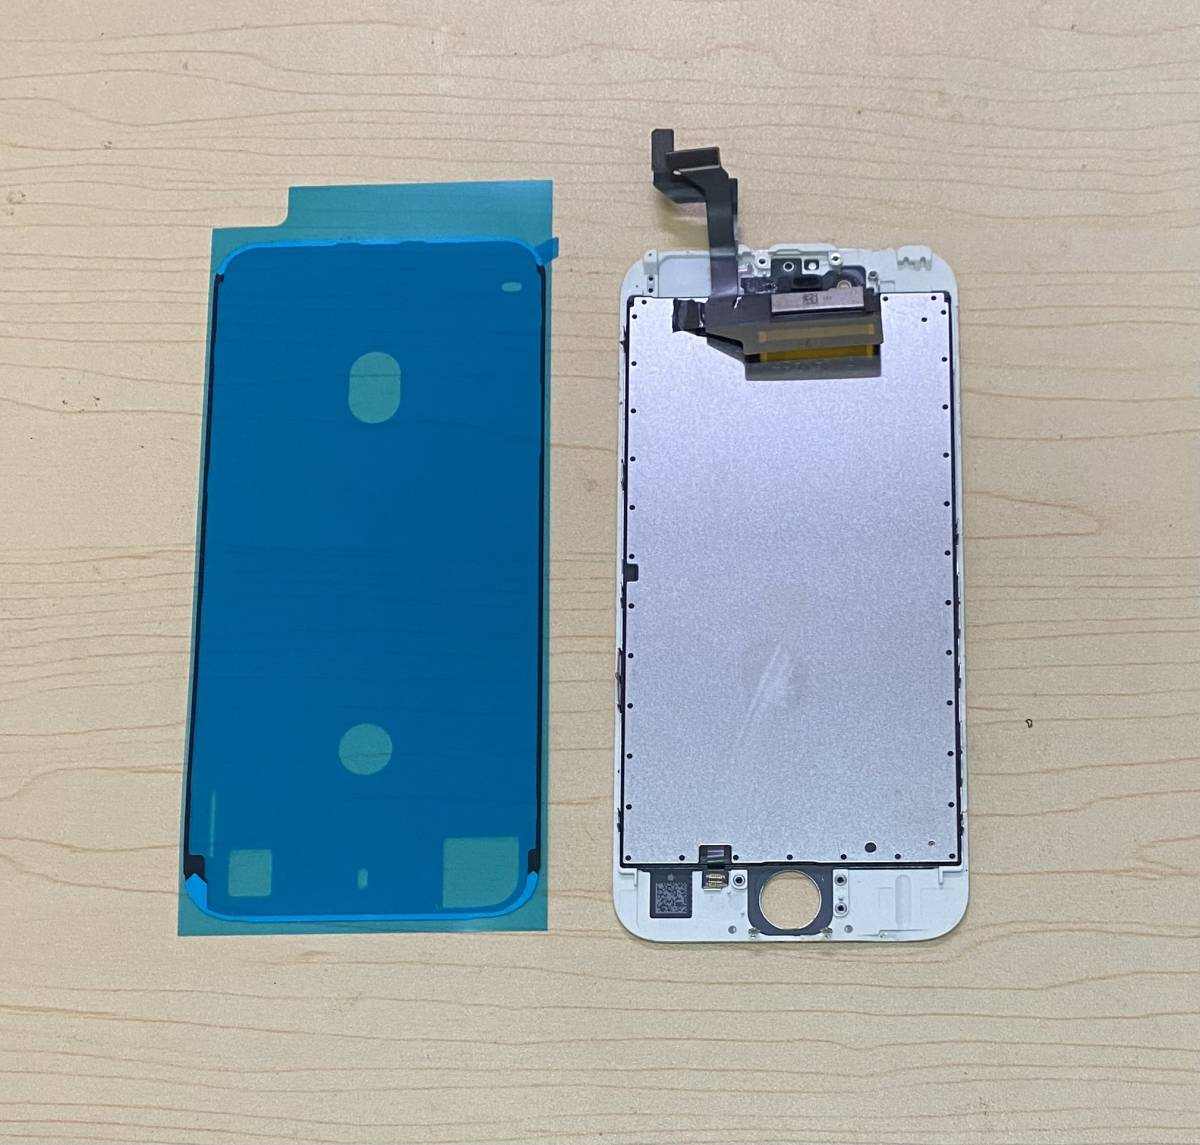 中古純正品 iPhone 6s フロントパネル  タッチ スライド 操作出来ました、カラー白、防水シール付き 、ジャンクの画像2